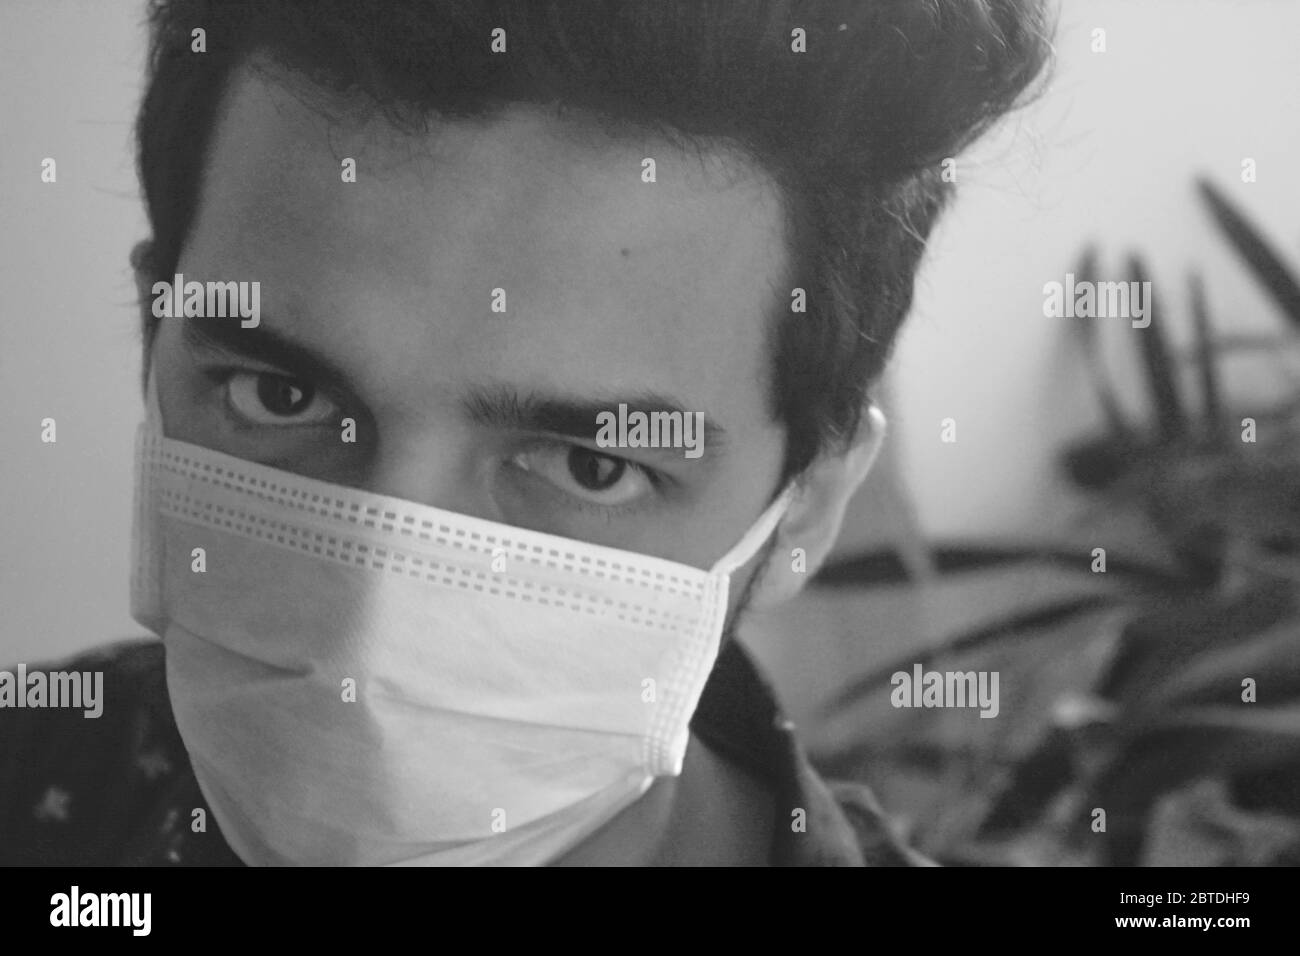 ha concetto di prevenire la diffusione del virus epidemico corona. uomo che indossa maschera facciale e guardando la fotocamera., foto in bianco e nero. Foto Stock